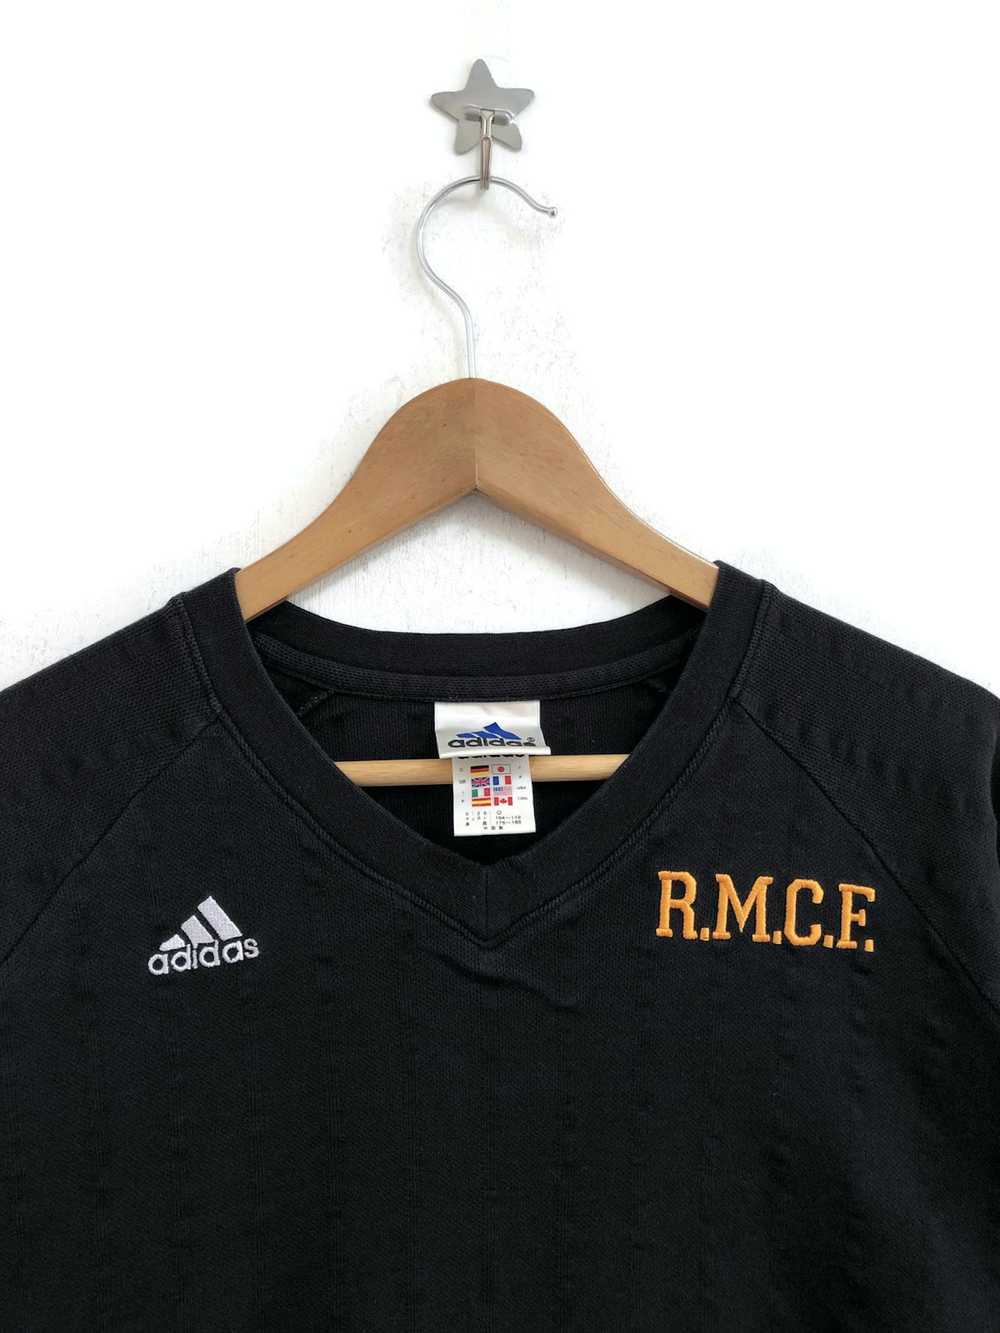 Adidas adidas vintage RMCF Sweatshirt football cl… - image 2